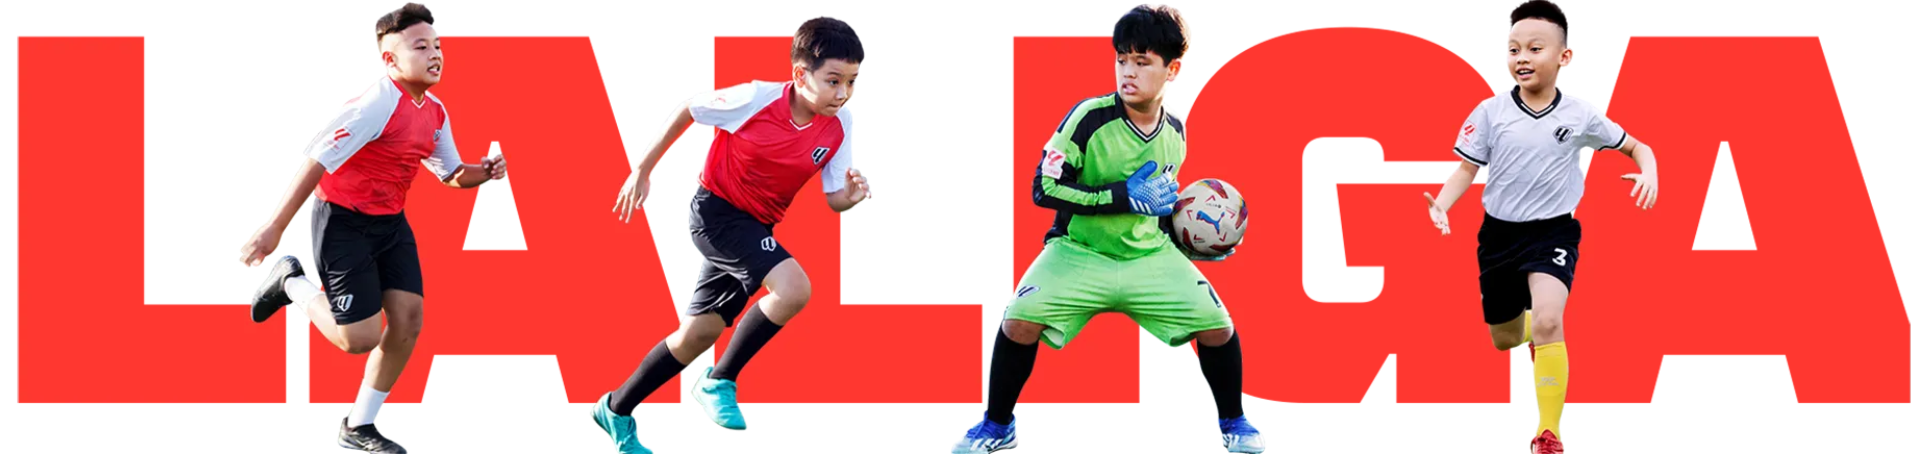 20240320 Academy Banner with Models 1 1 | Laliga Việt Nam - Ươm mầm tài năng bóng đá trẻ